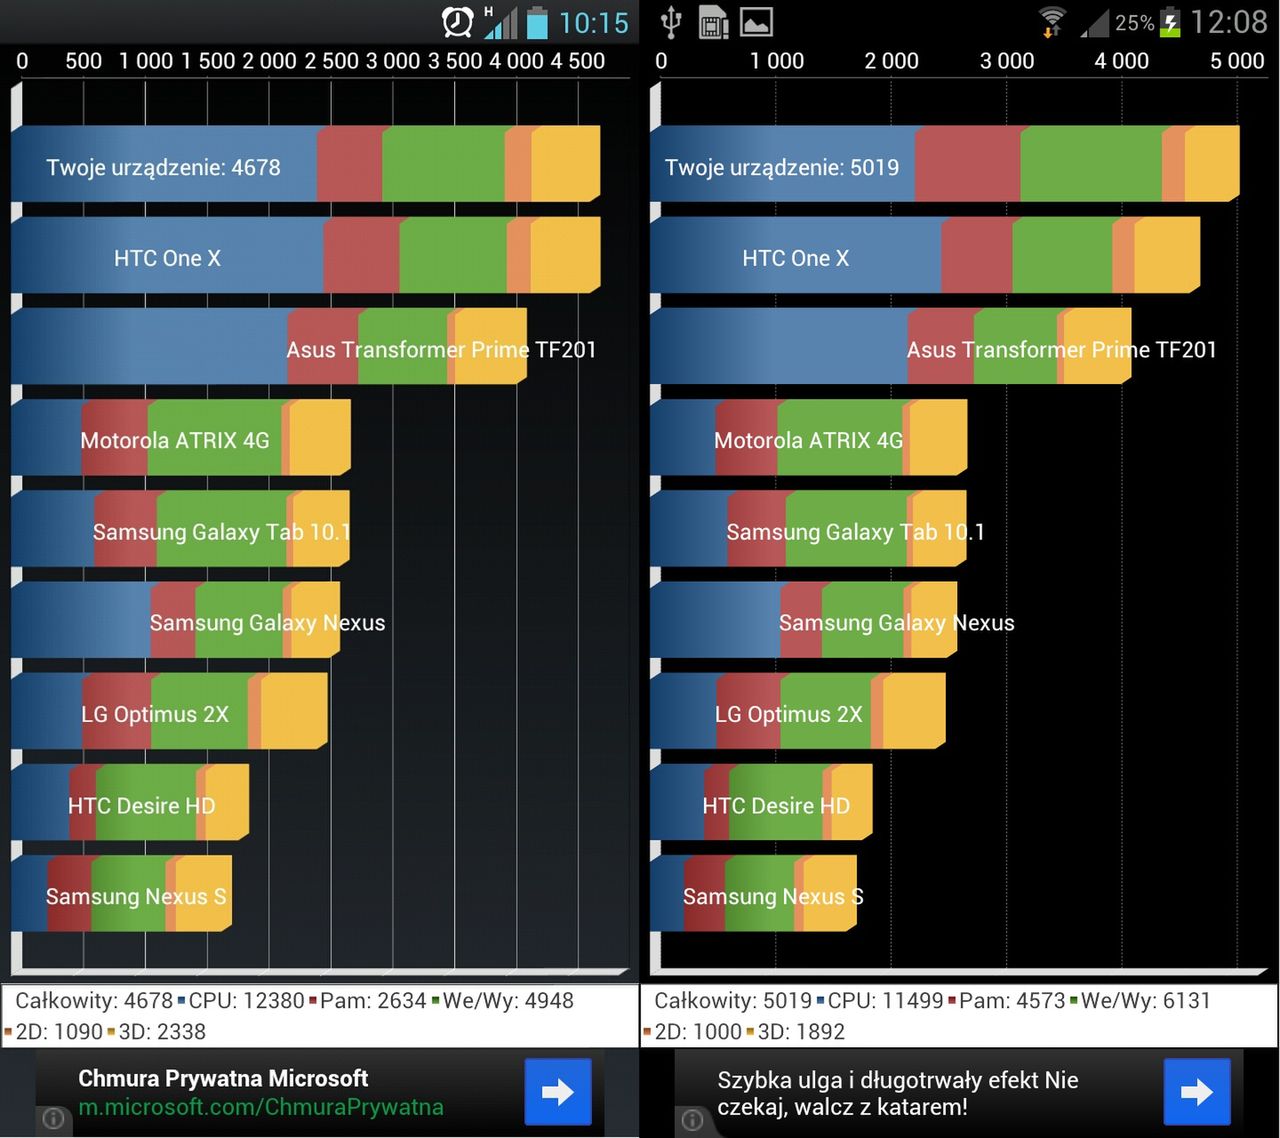 Wydajność Swift 4X HD (z lewej) vs Galaxy S III (z prawej)